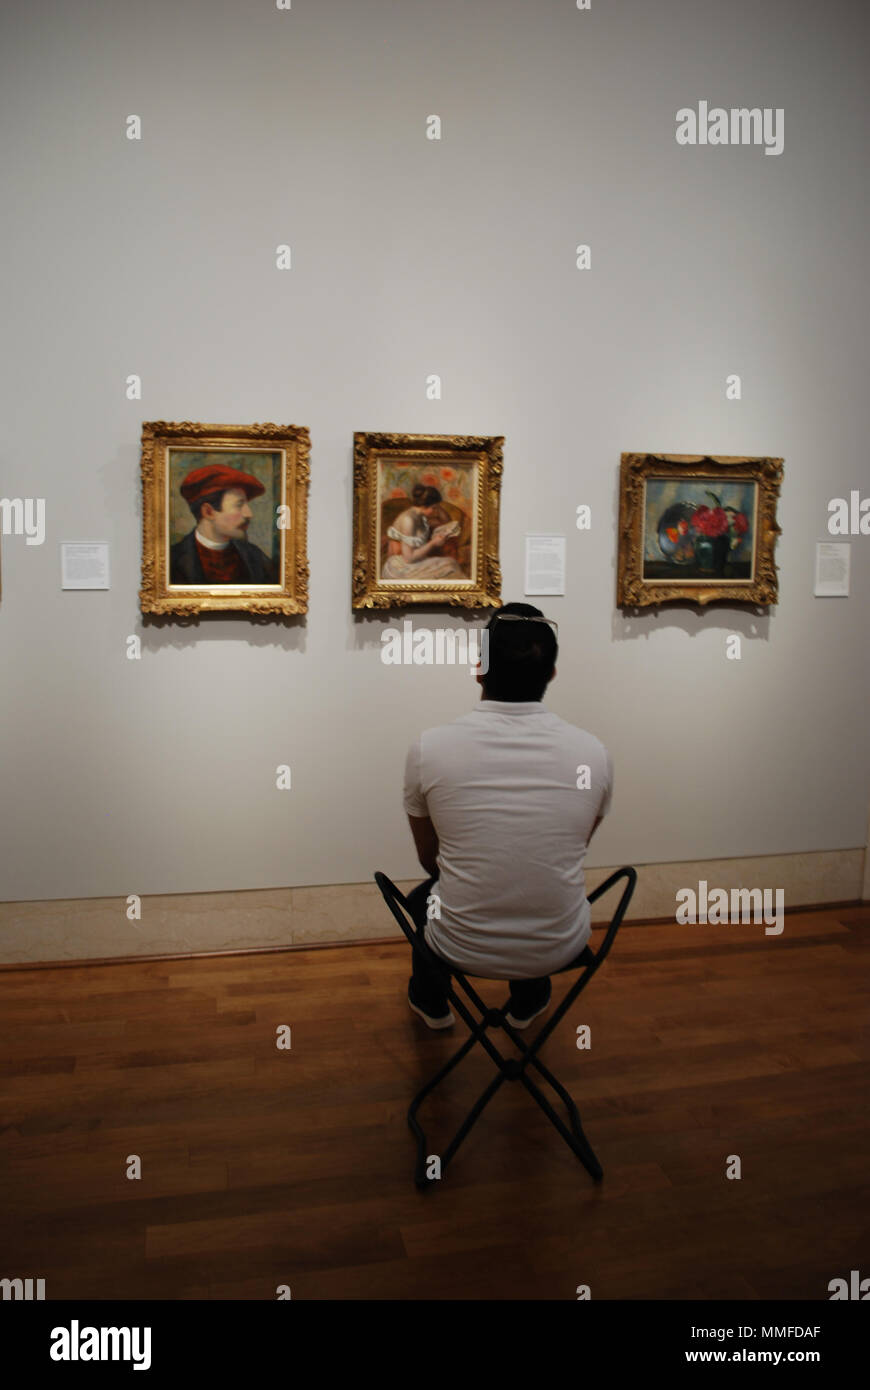 Hombre en el museo de bellas artes viendo en pinturas famosas. Concepto de la curiosidad, la educación, la inteligencia, el pasatiempo. Foto de stock